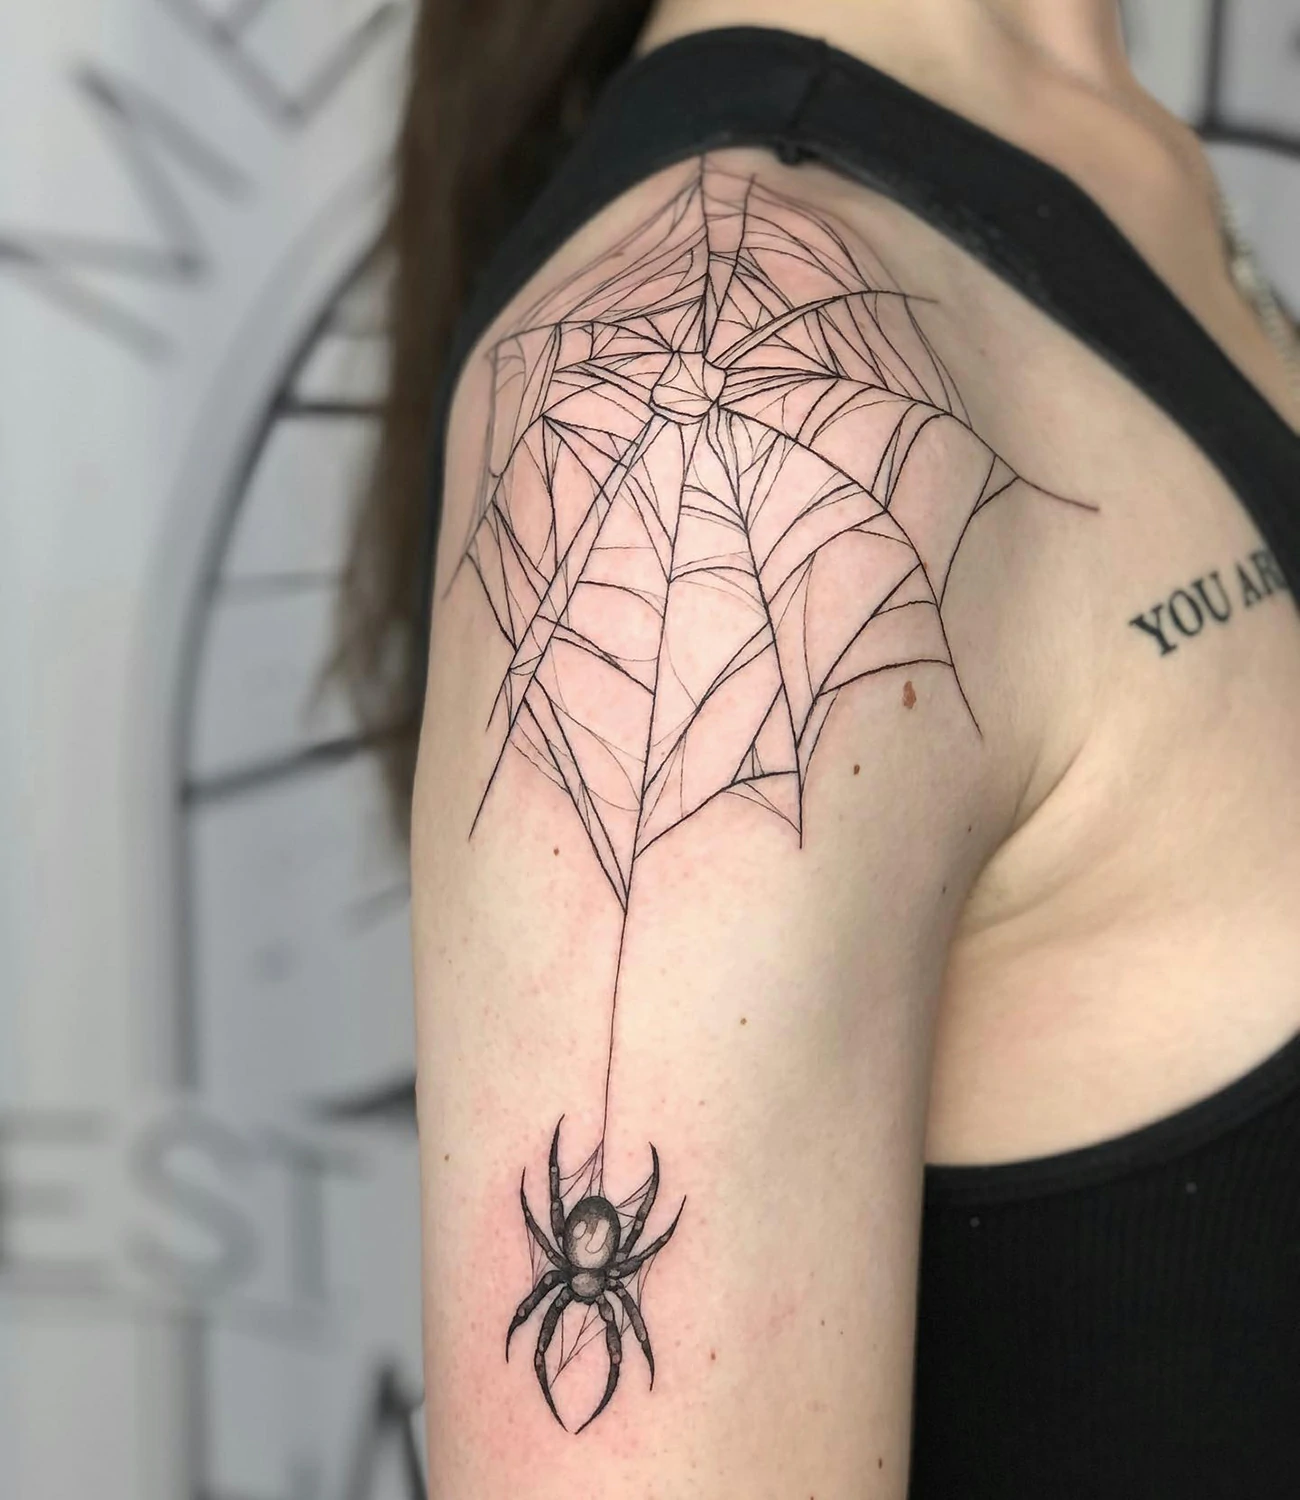 Spider web tattoo on shoulder